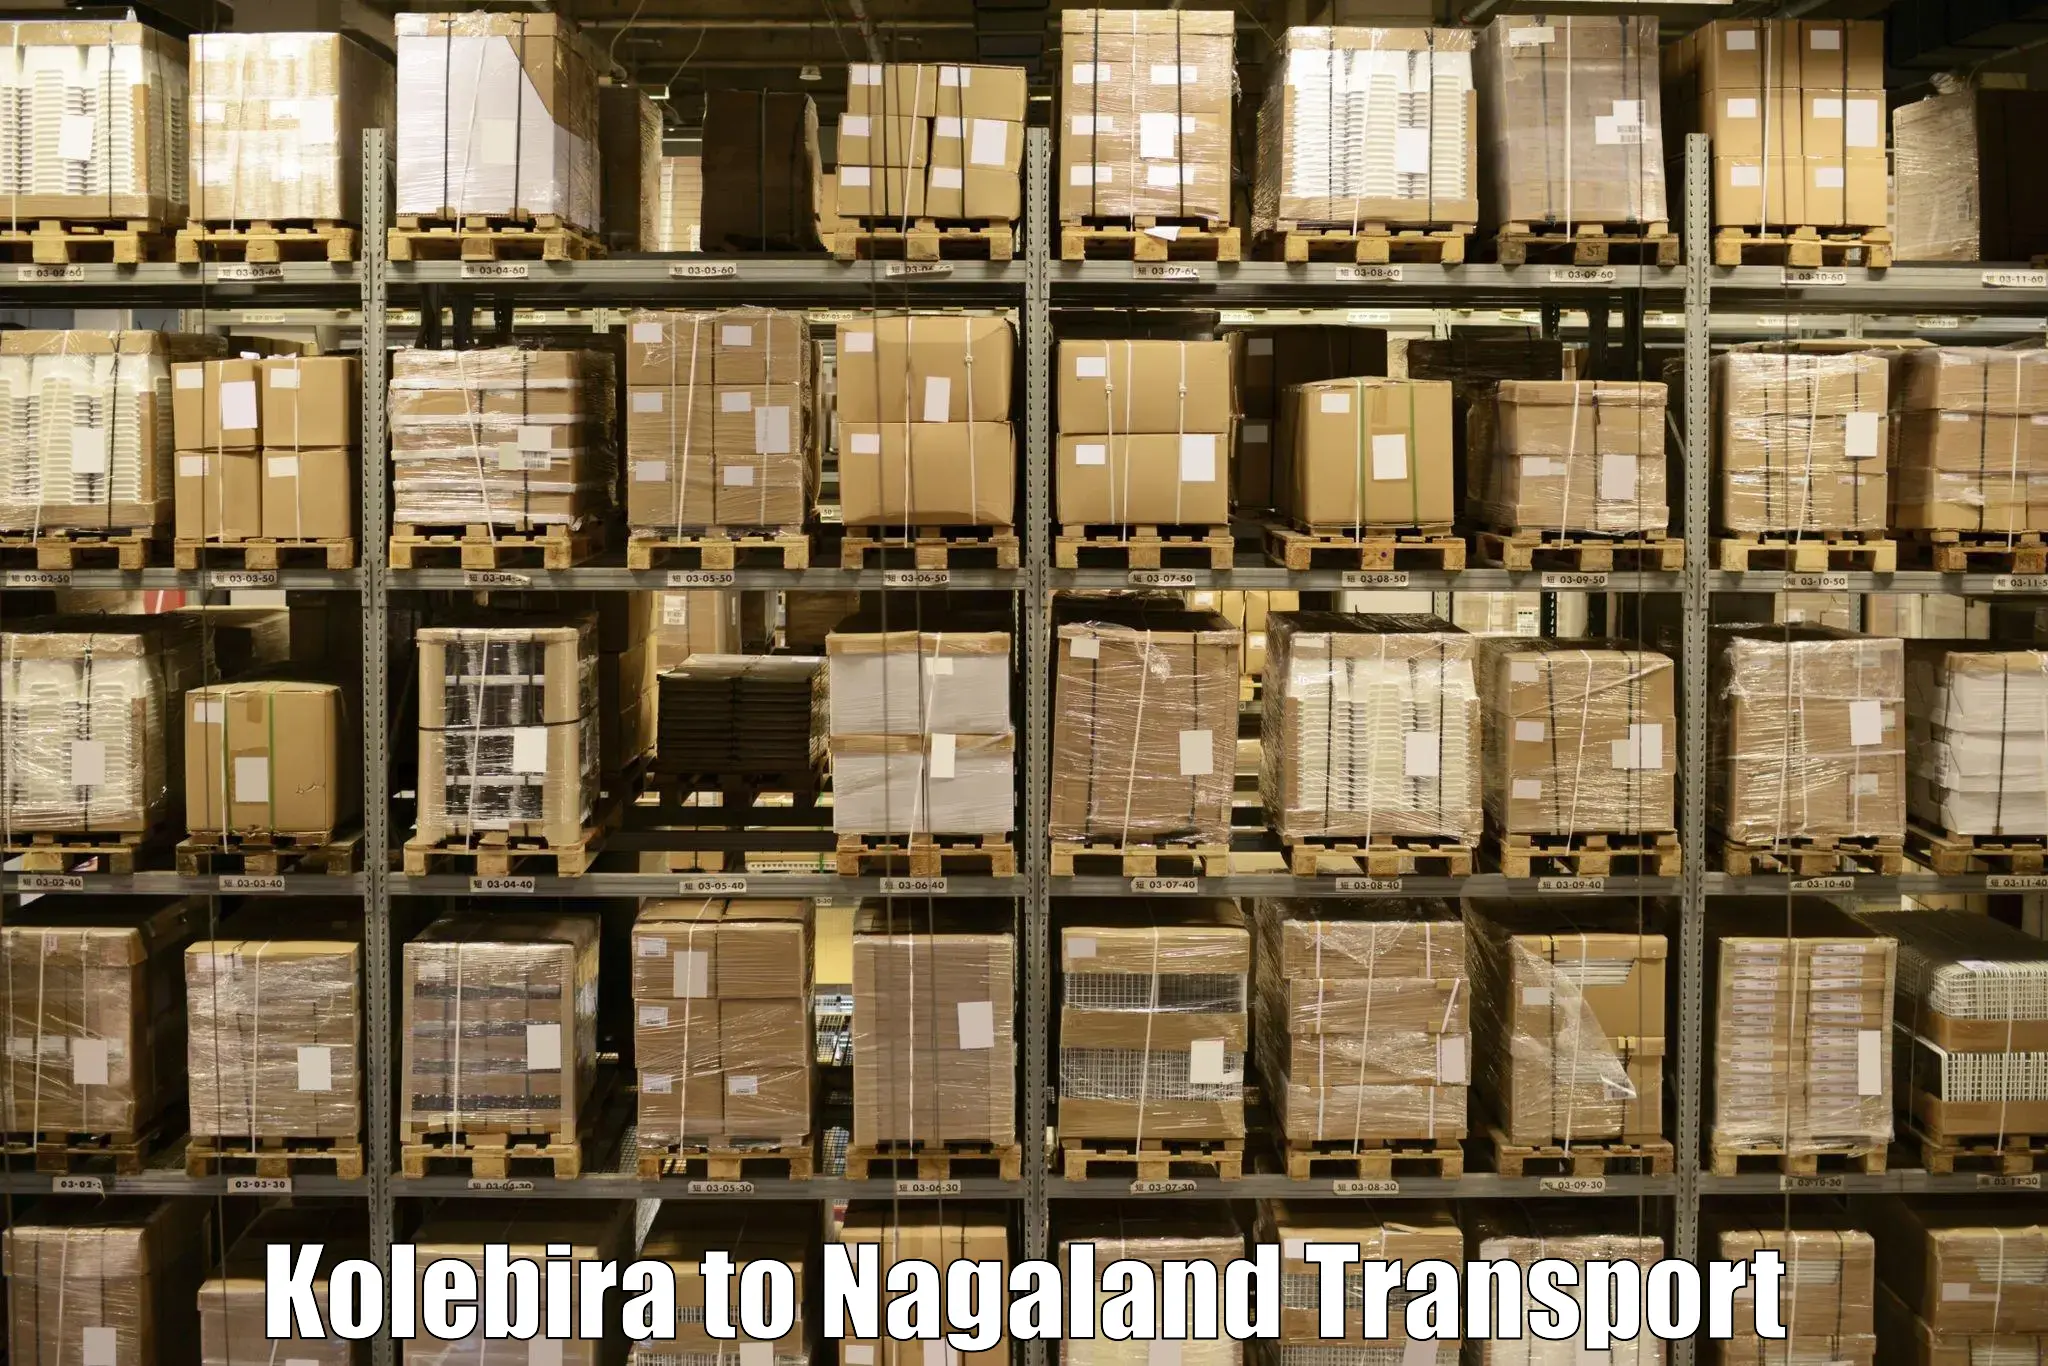 Bike shipping service Kolebira to NIT Nagaland